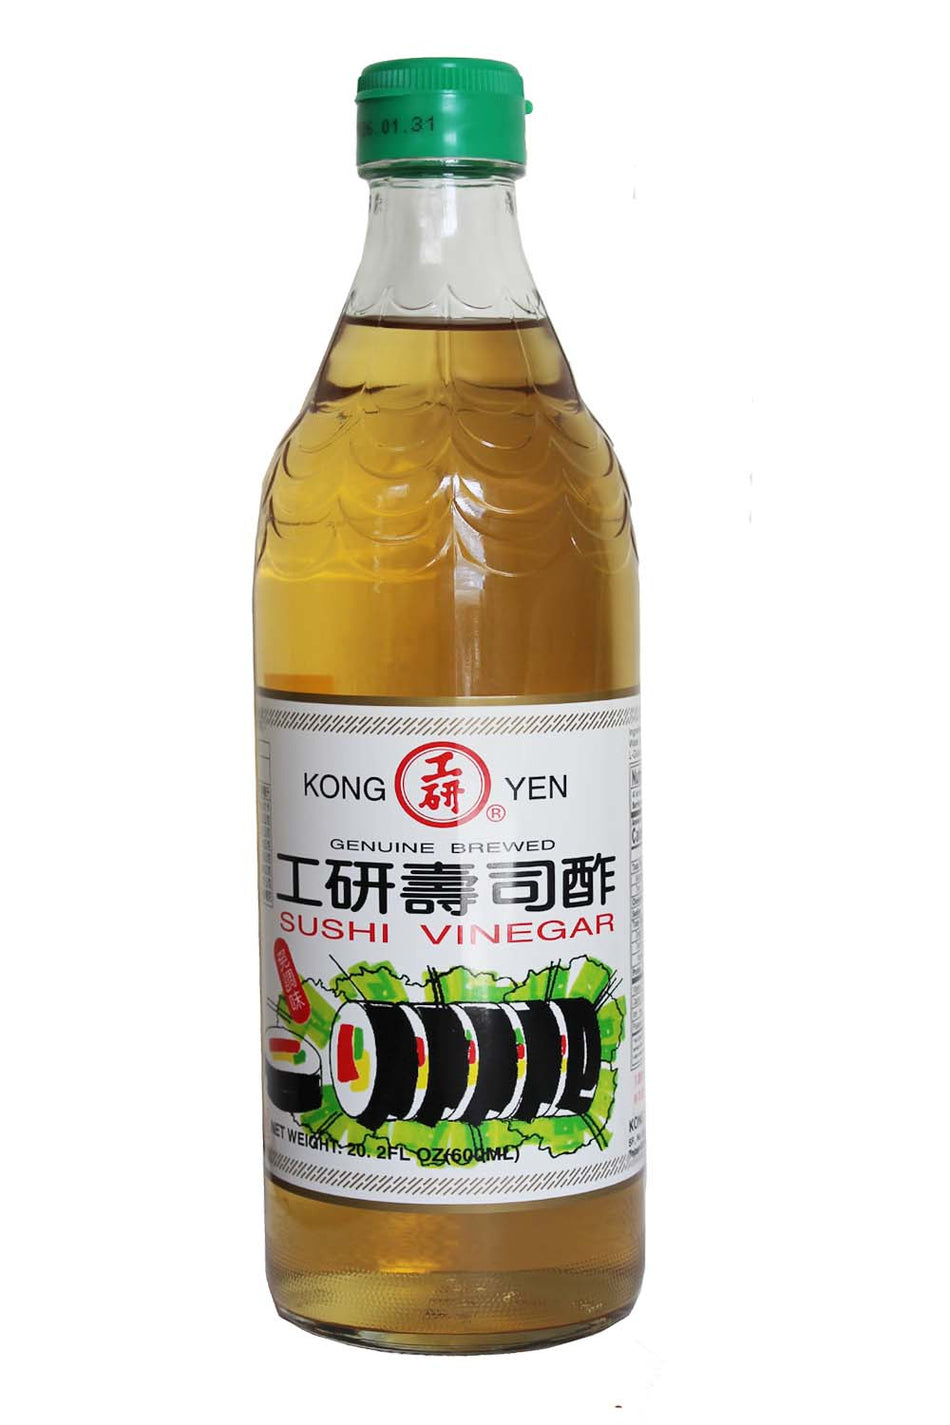 Kong Yen Sushi Vinegar